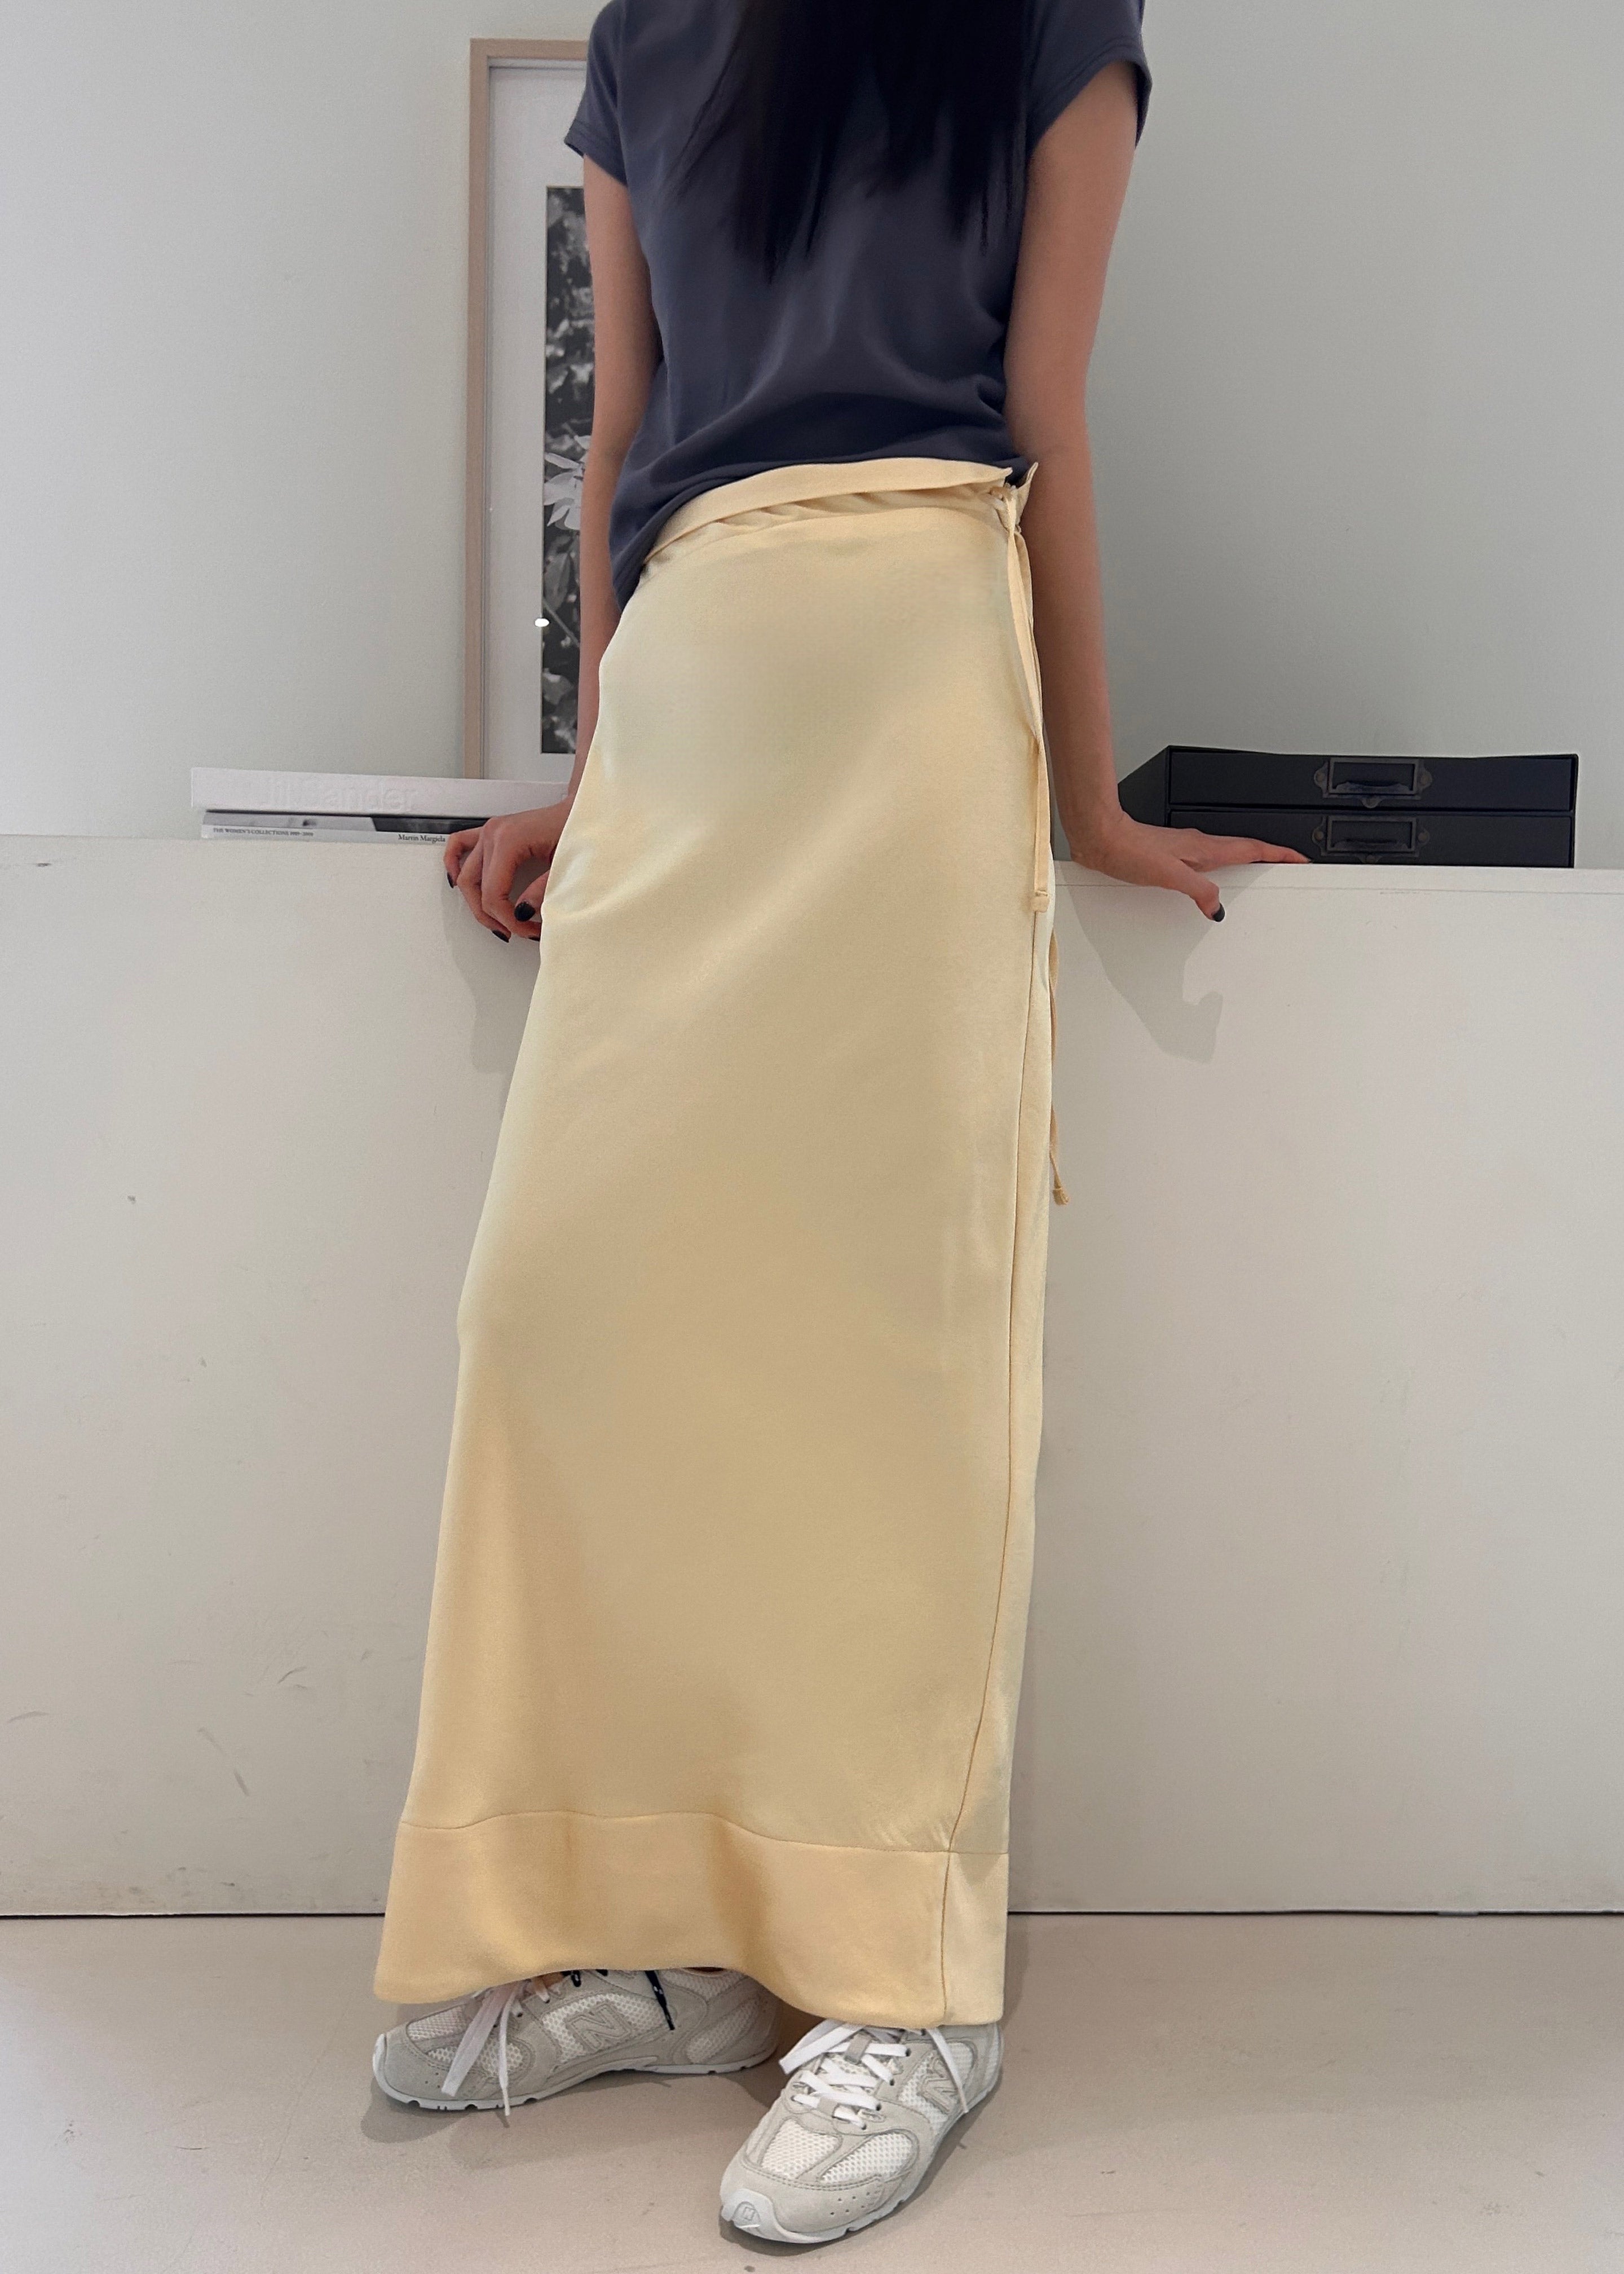 Siovhan Satin Skirt - Yellow - 9